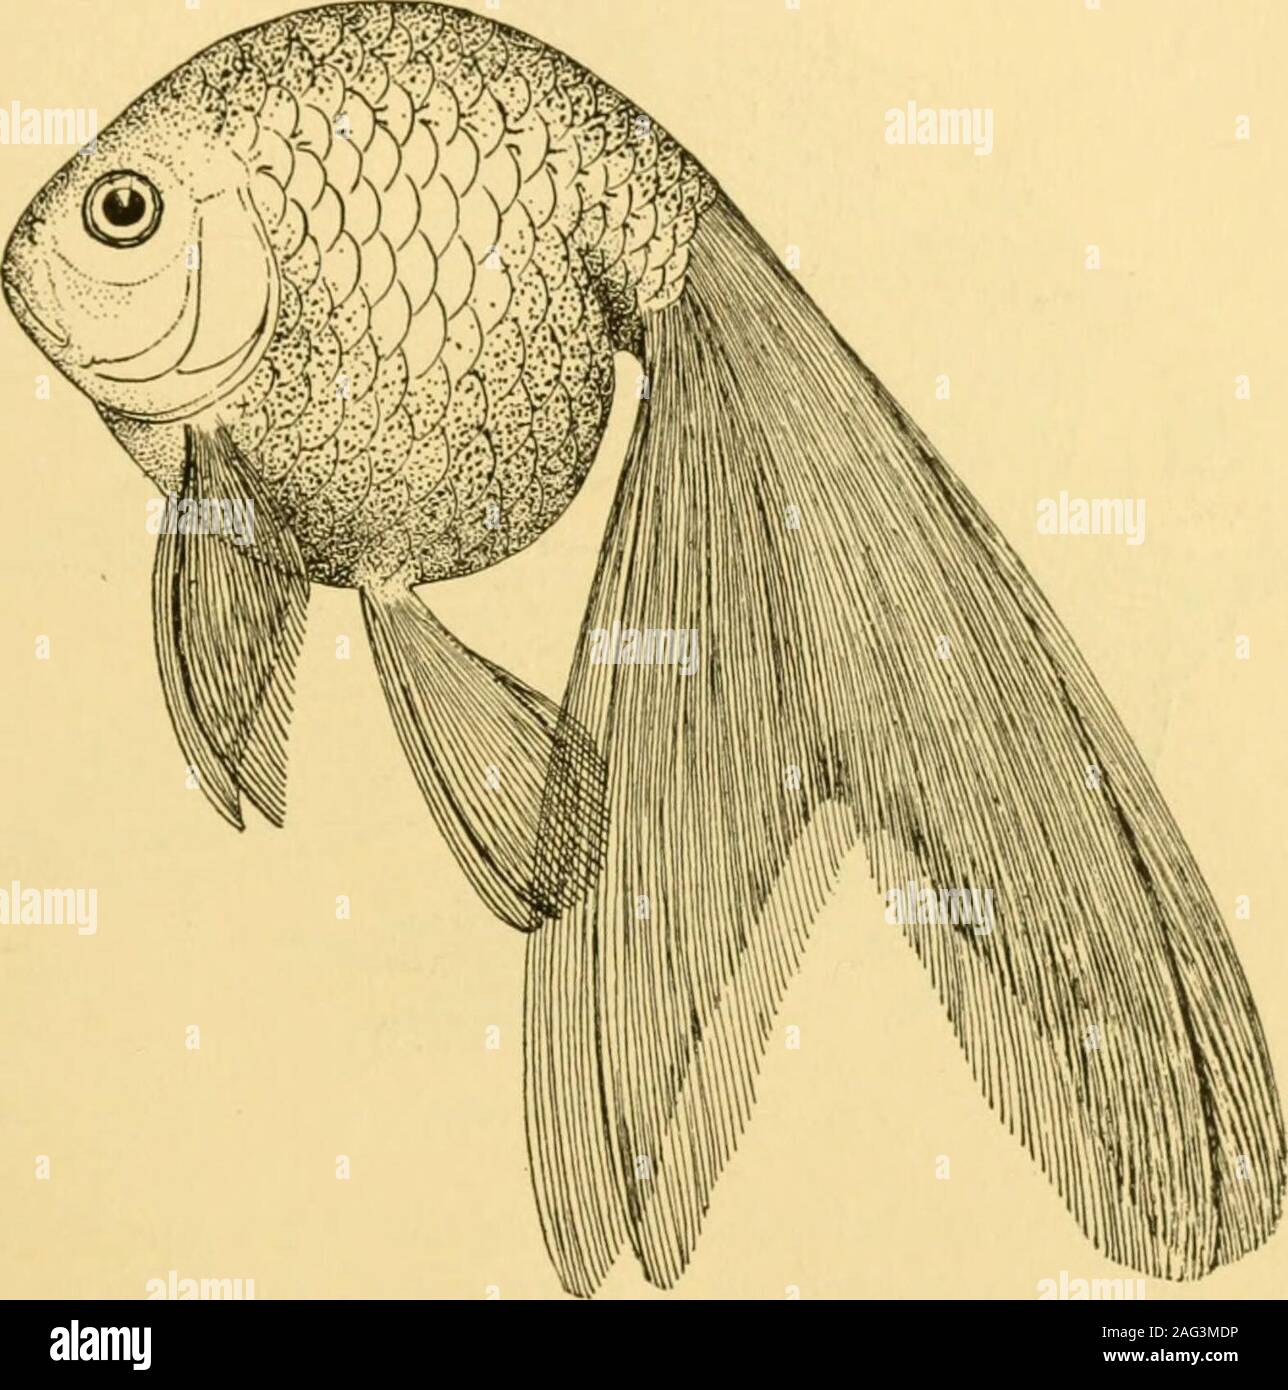 Goldfish variedades y peces de acuario tropical; una guía completa a los  acuarios y temas relacionados. theLionhead. Los chinos TUMBLER GOLDFISH  entre otras razas de goldfish chinos nunca conocida popularmente inAmerica